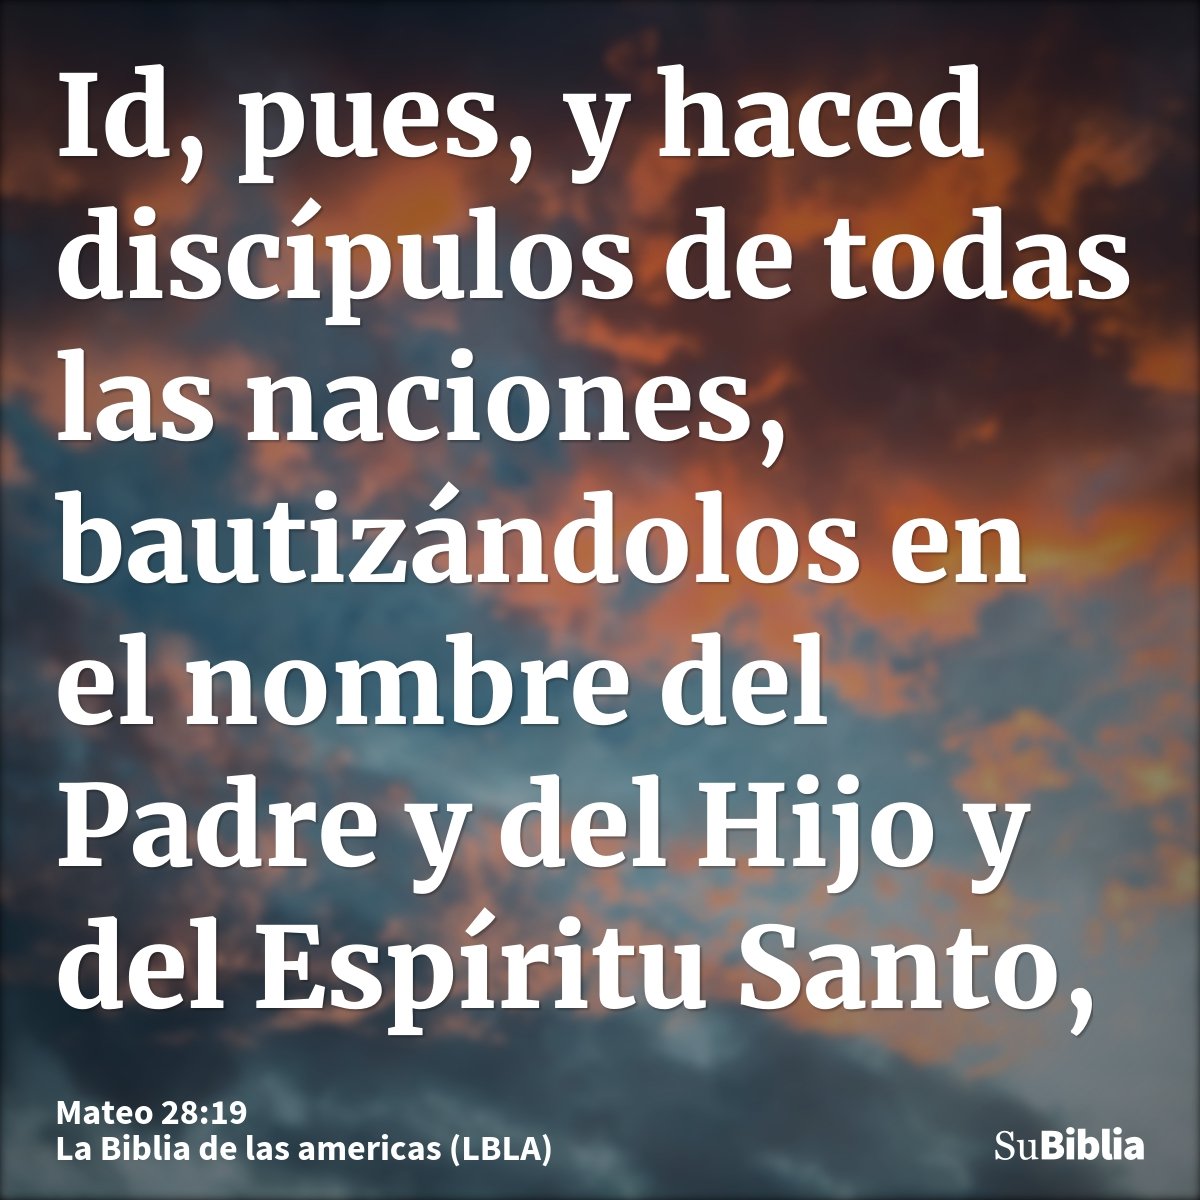 Id, pues, y haced discípulos de todas las naciones, bautizándolos en el nombre del Padre y del Hijo y del Espíritu Santo,